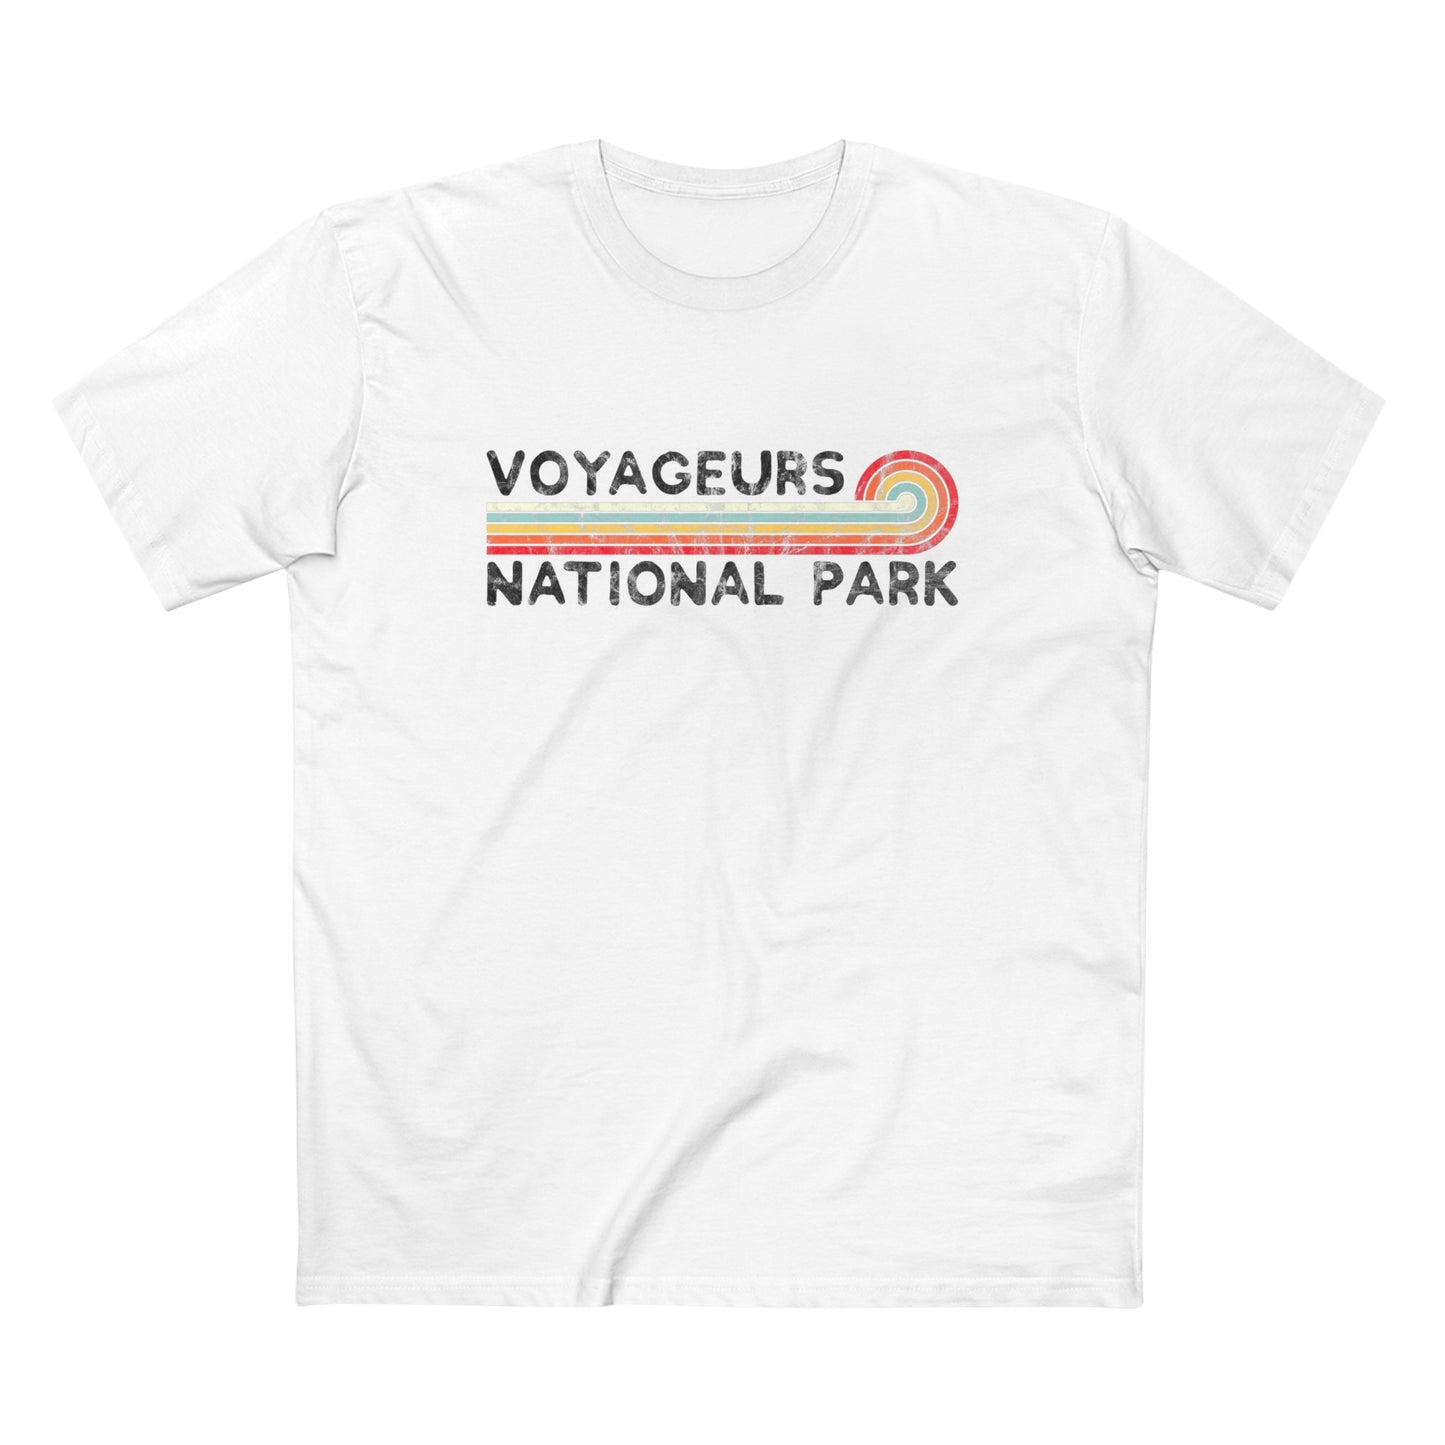 Voyageurs National Park T-Shirt - Vintage Stretched Sunrise